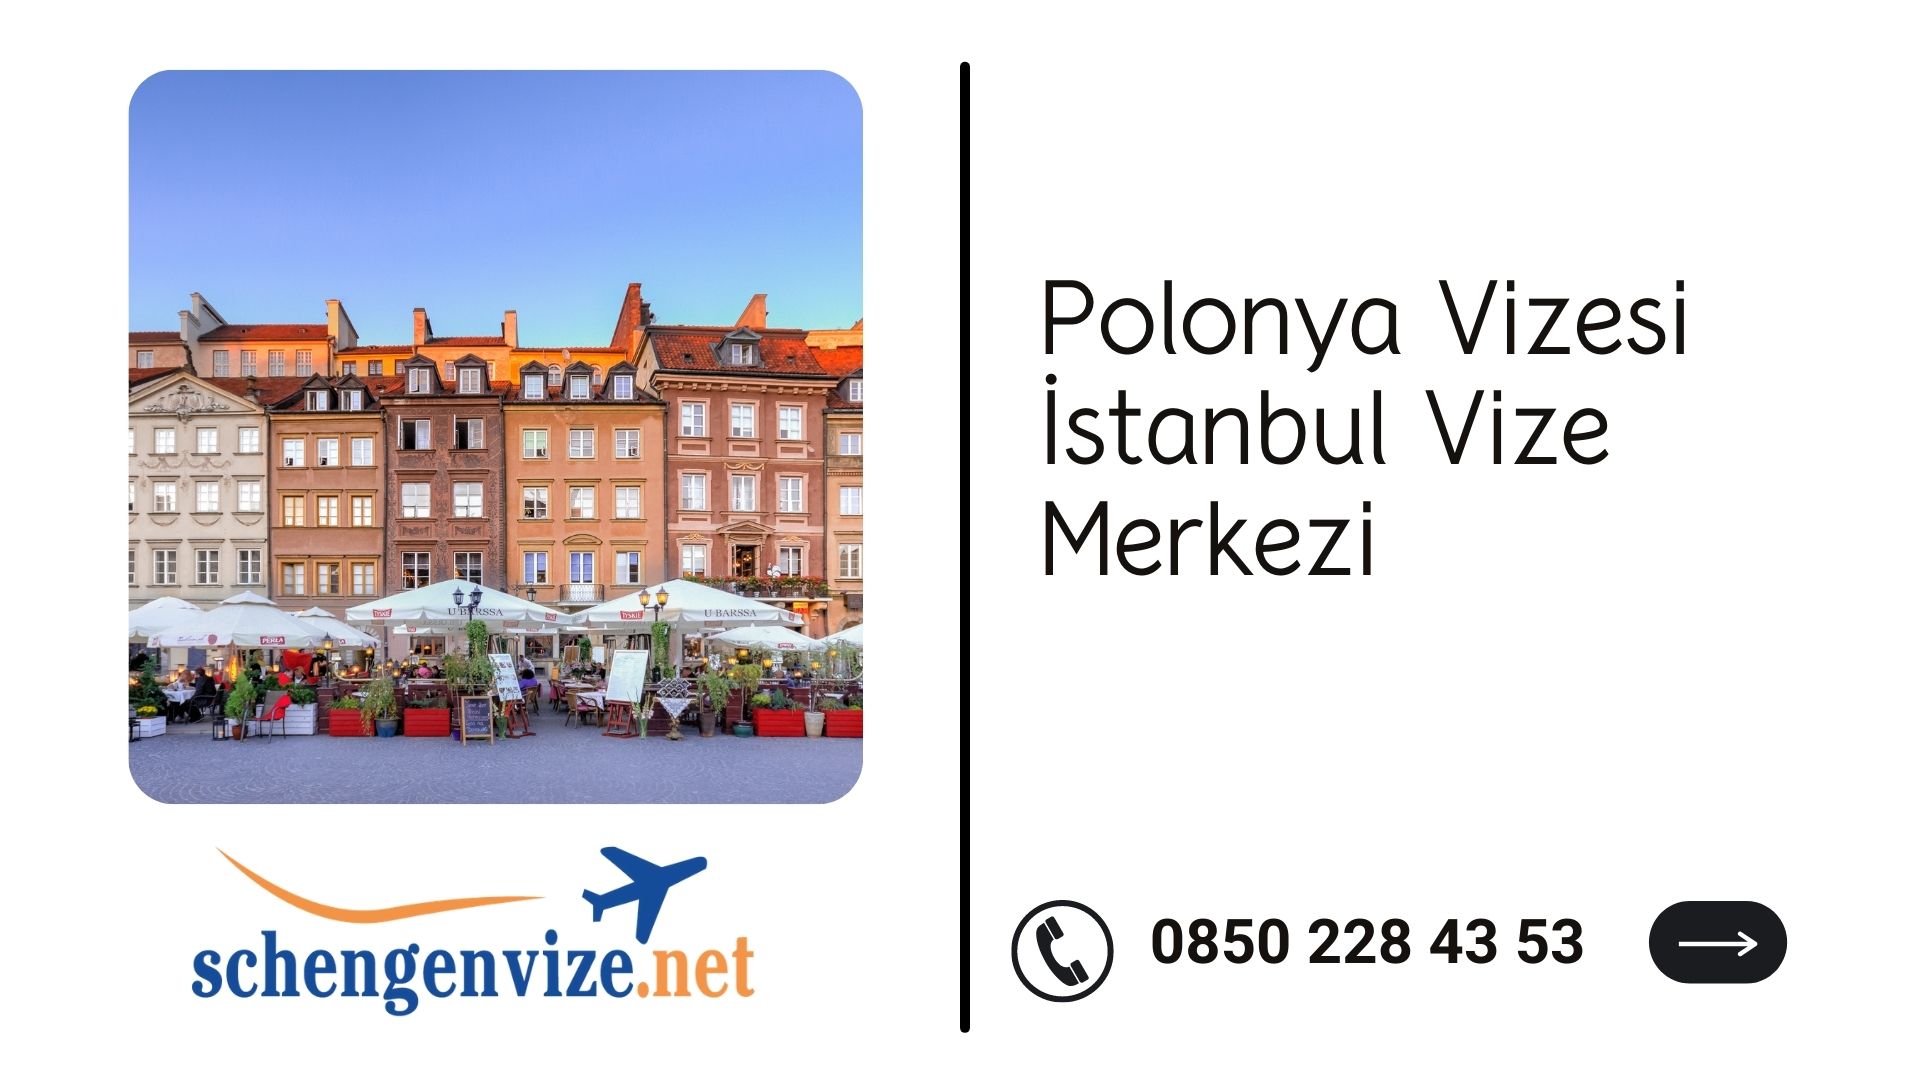 Polonya Vizesi İstanbul Vize Merkezi